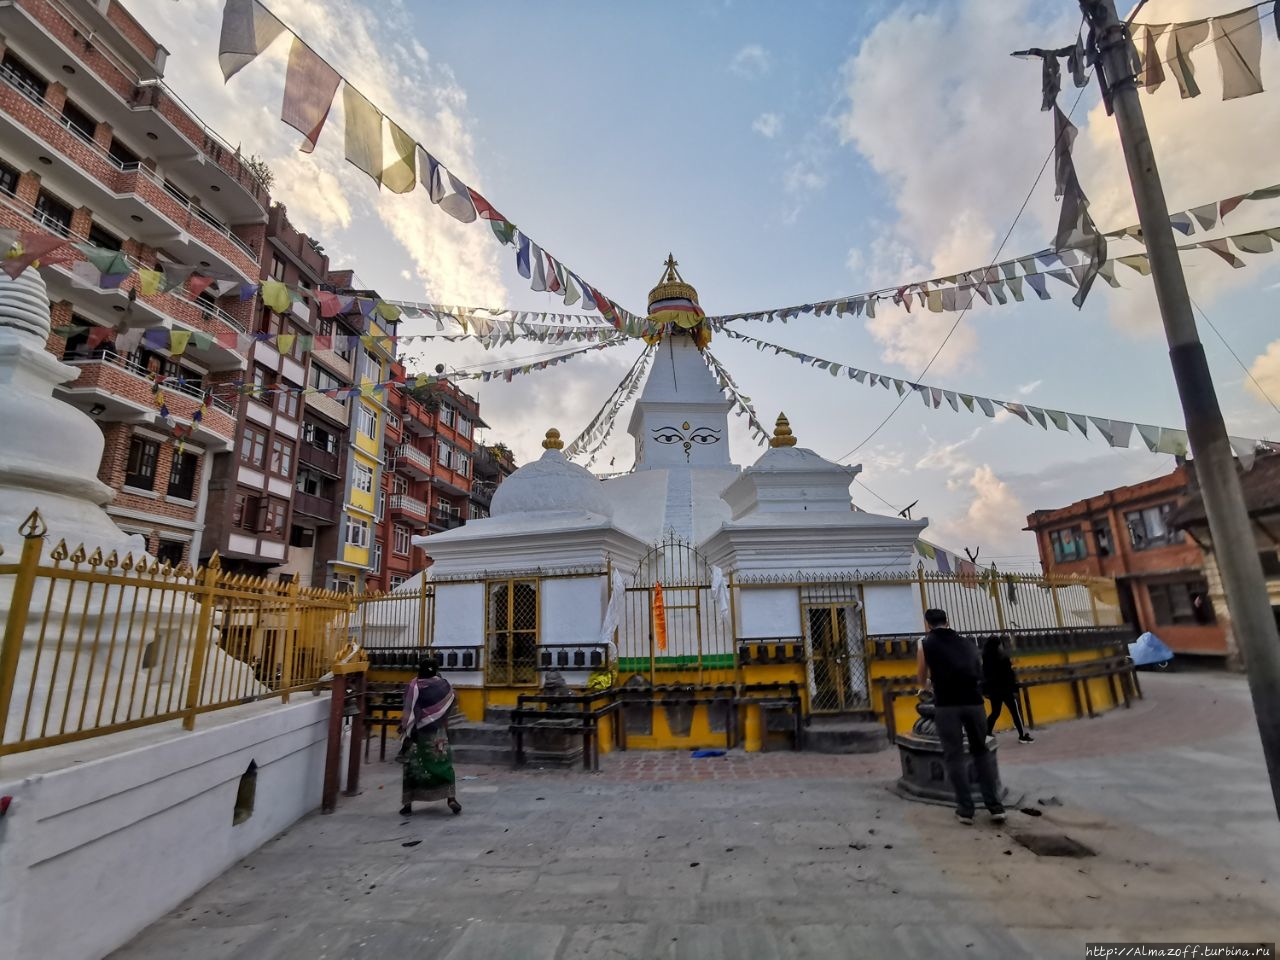 ступа императора Ашоки (Северная ступа) Патан (Лалитпур), Непал